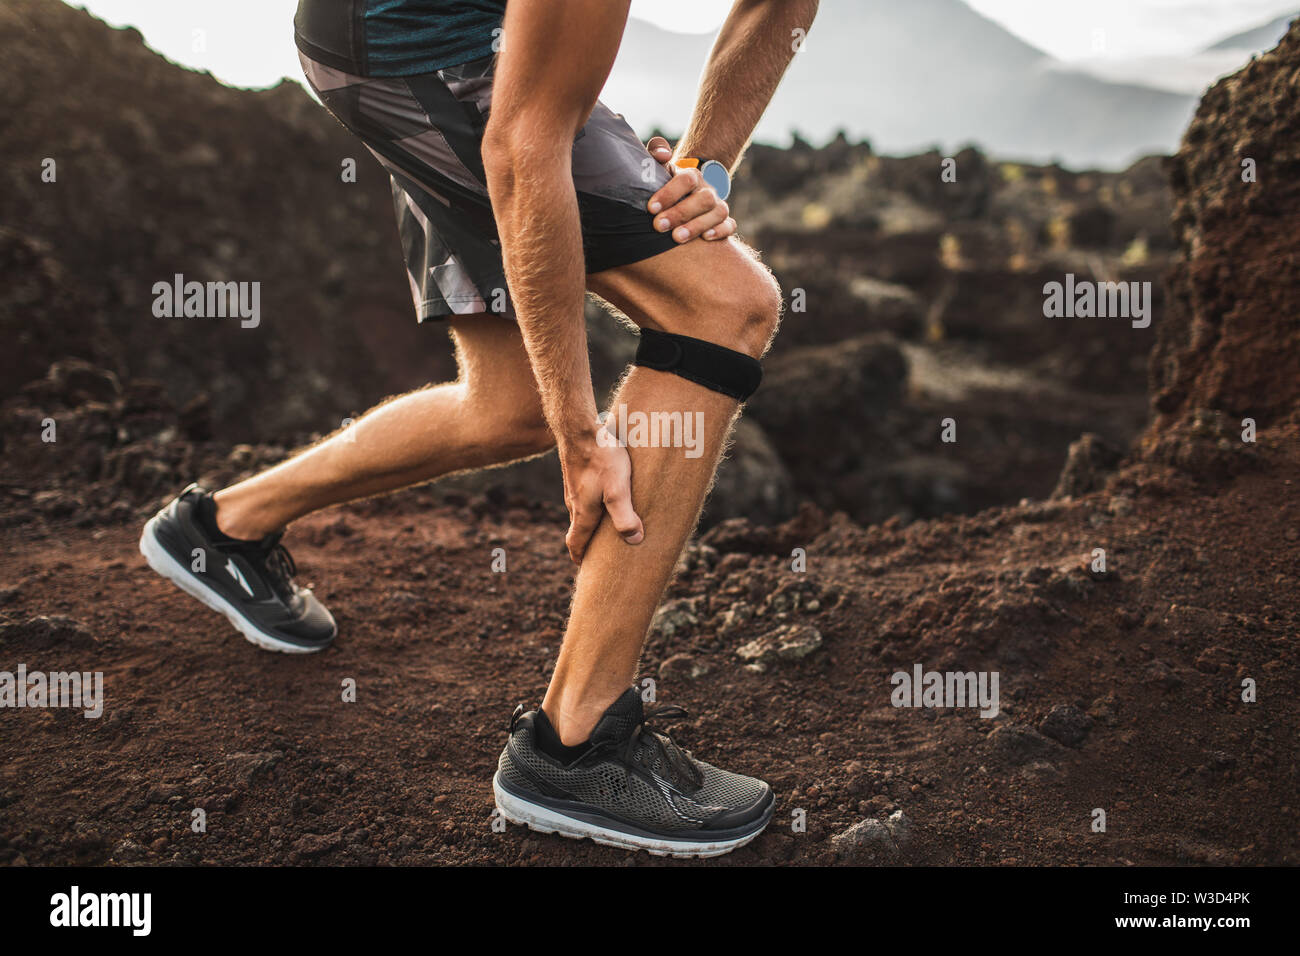 Läufer mit Knie Stützverband, haben aber ein Problem mit der Wade Muskel  auf ausgeführt wird. Beinverletzung Stockfotografie - Alamy